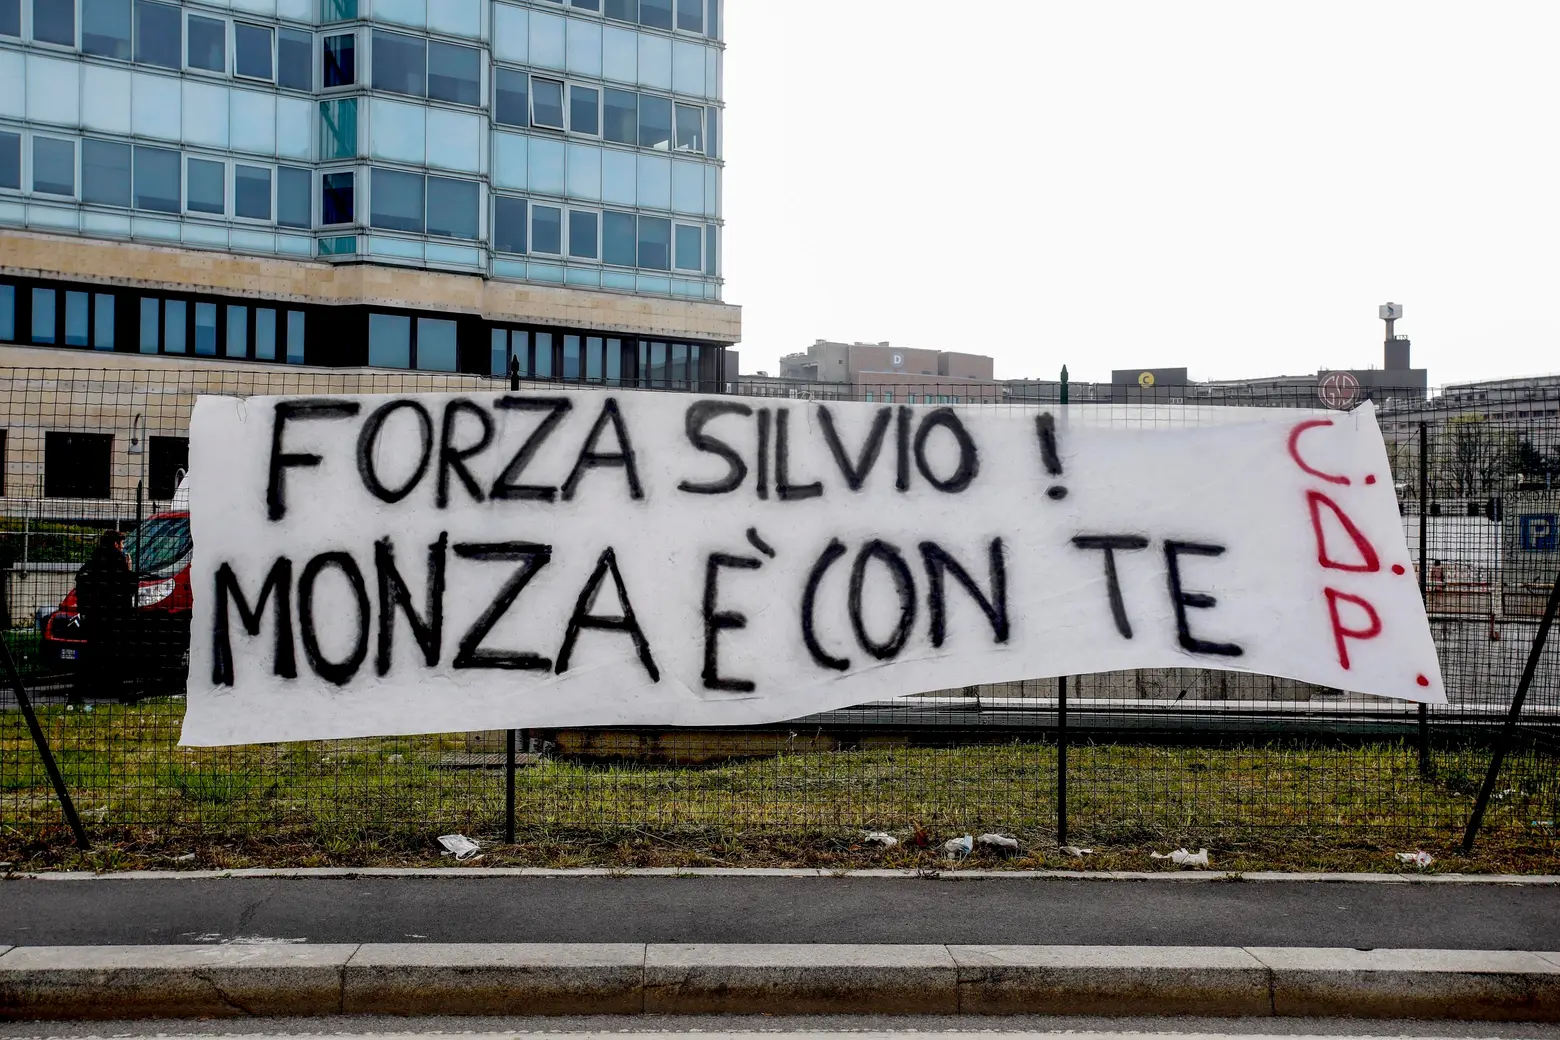 Striscione dei tifosi del Monza per Silvio Berlusconi